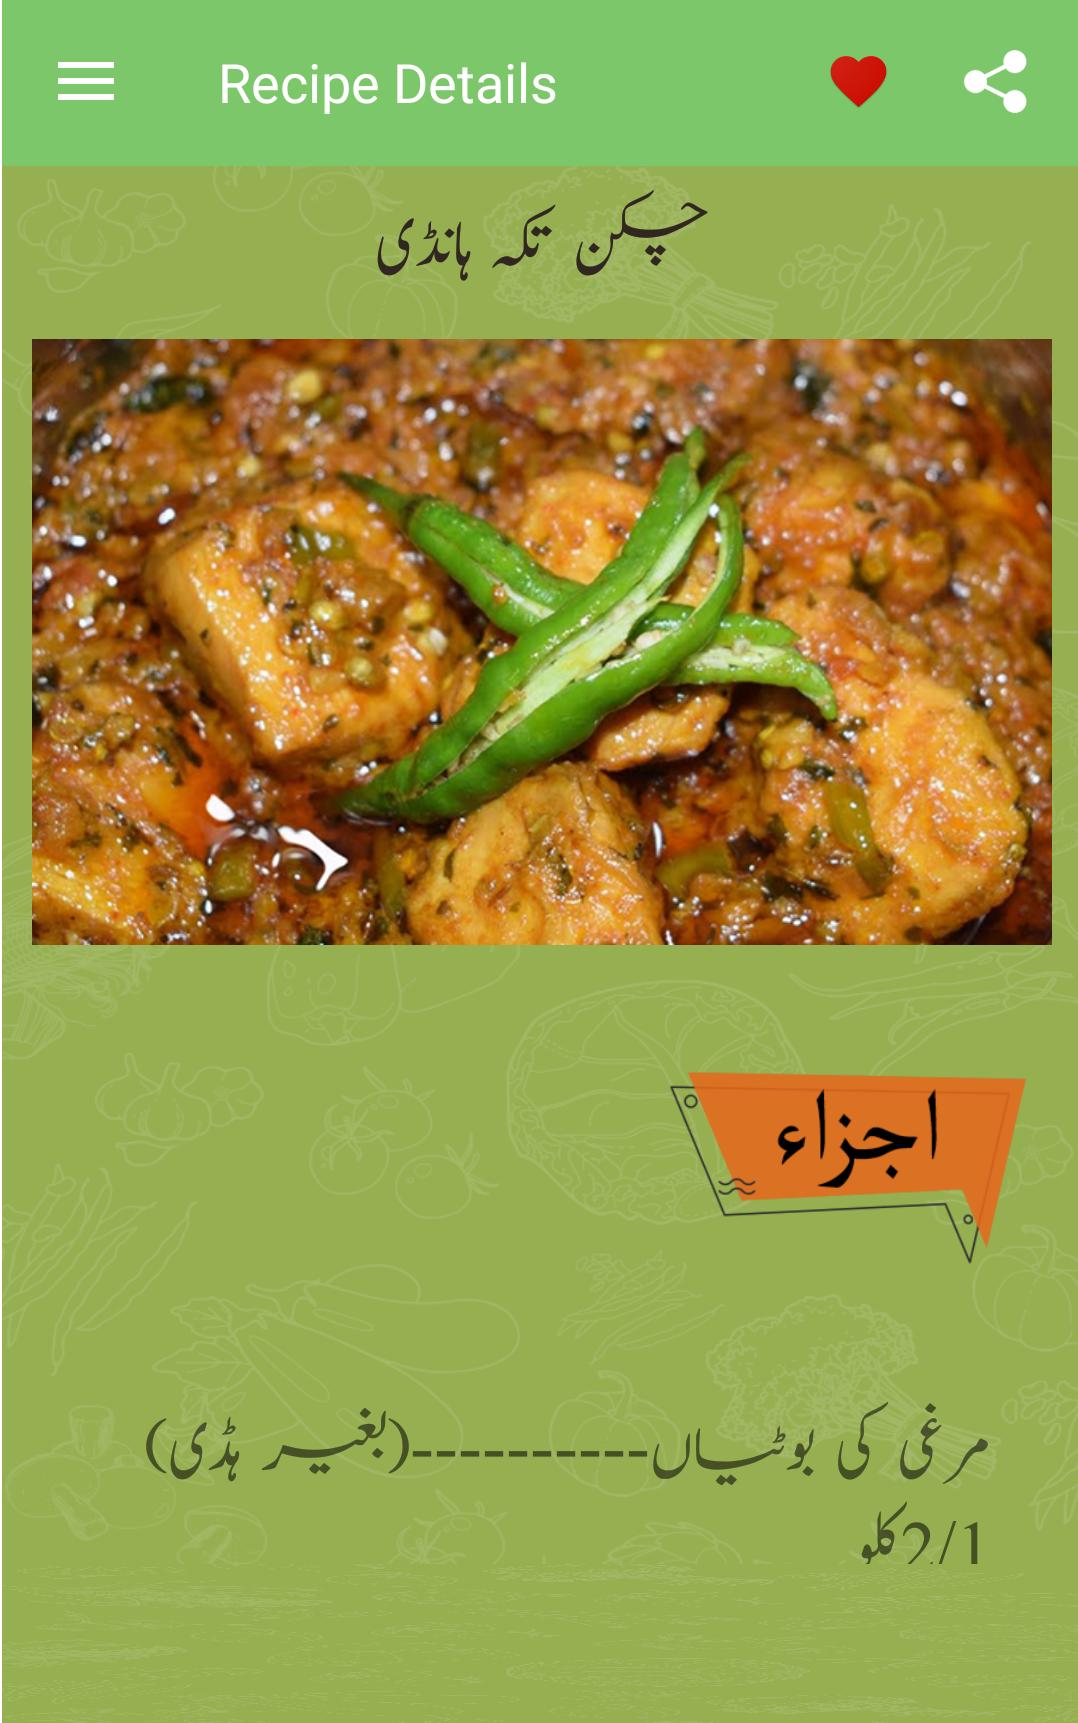 Cara Masak Kari Kambing Pakistan - Hans Cooking Recipes